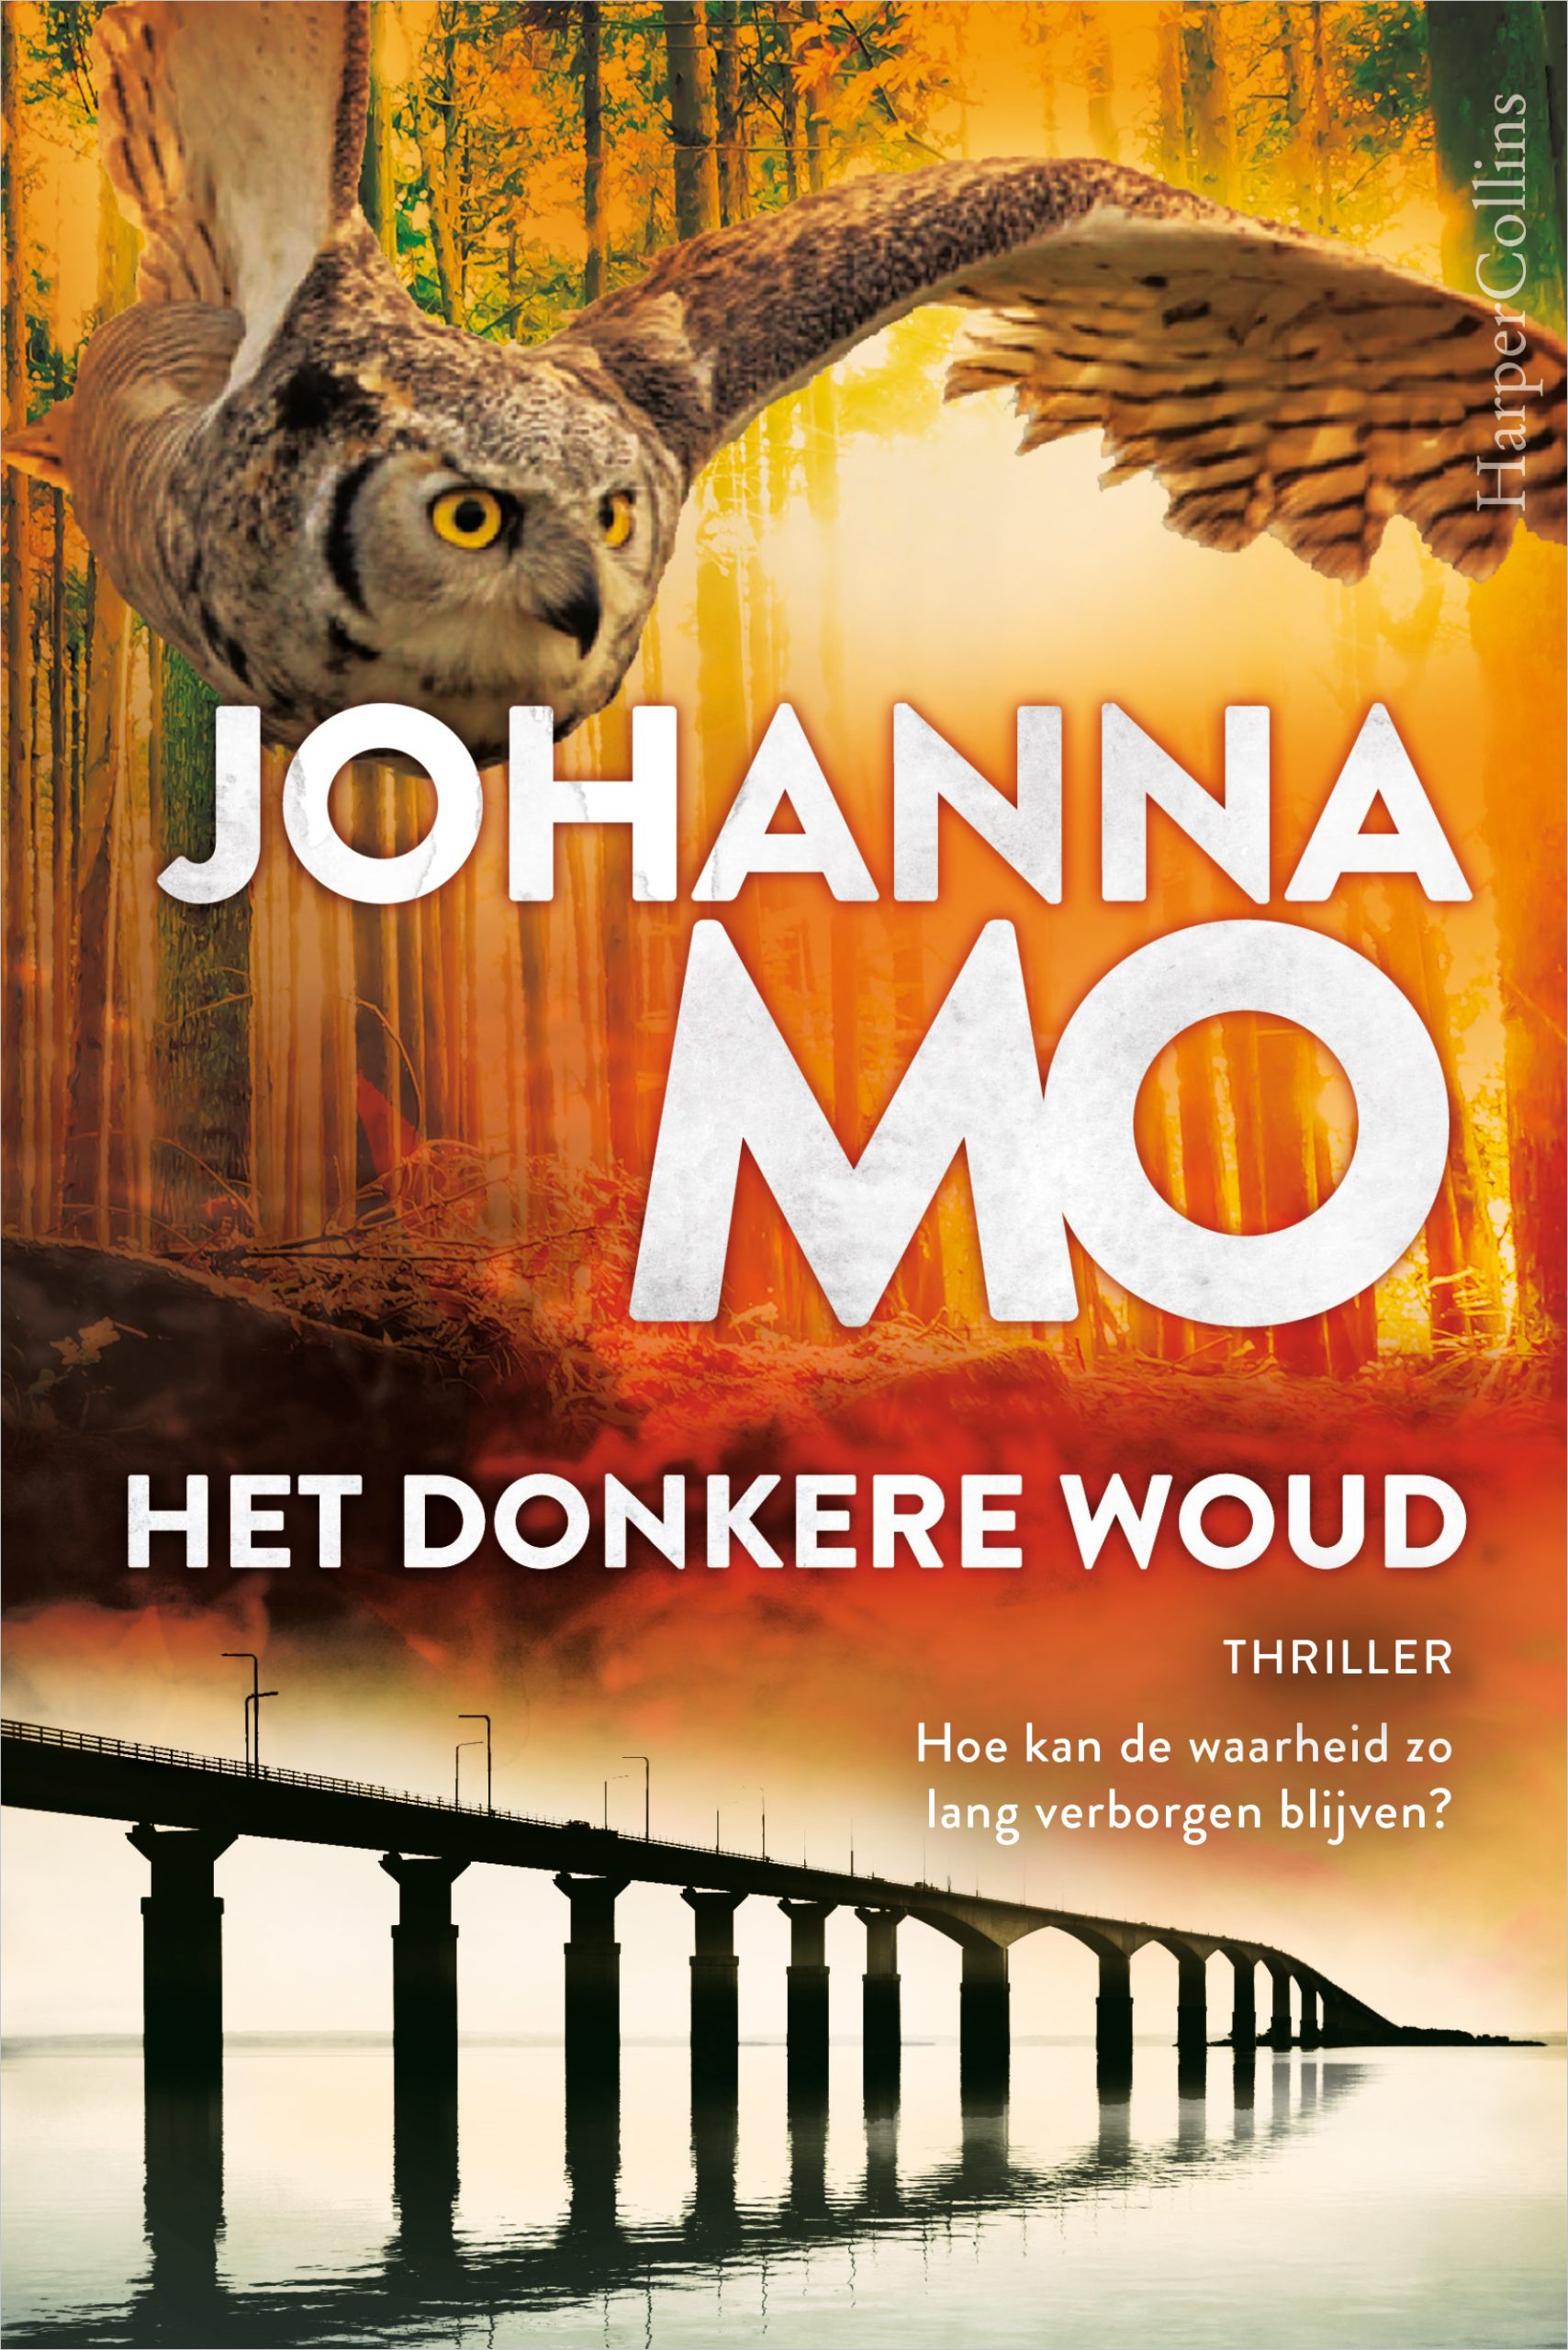 Omslag van de thriller Het donkere woud van de Zweedse schrijfster Johanna Mo.